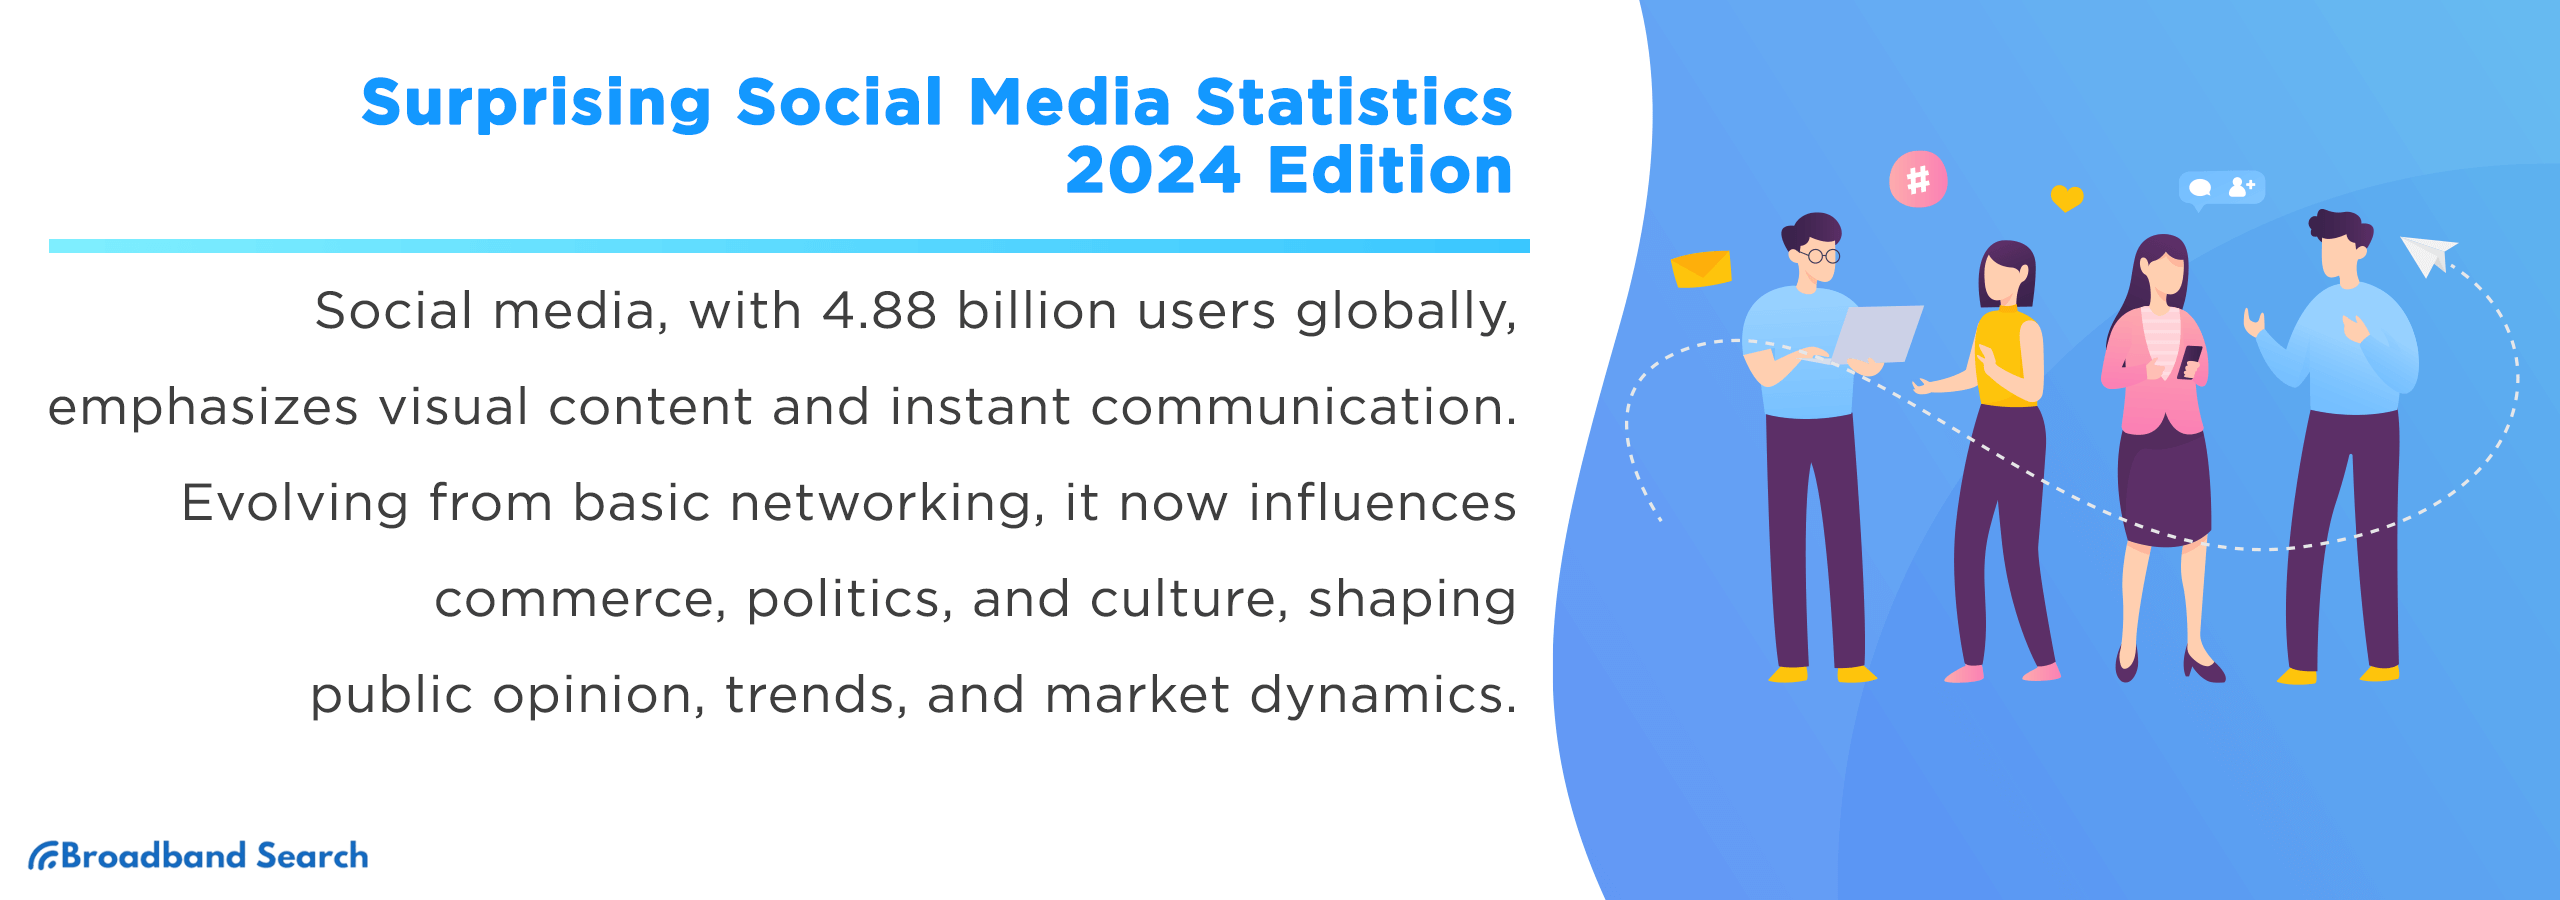 Surprising Social Media Statistics - The 2024 Edition